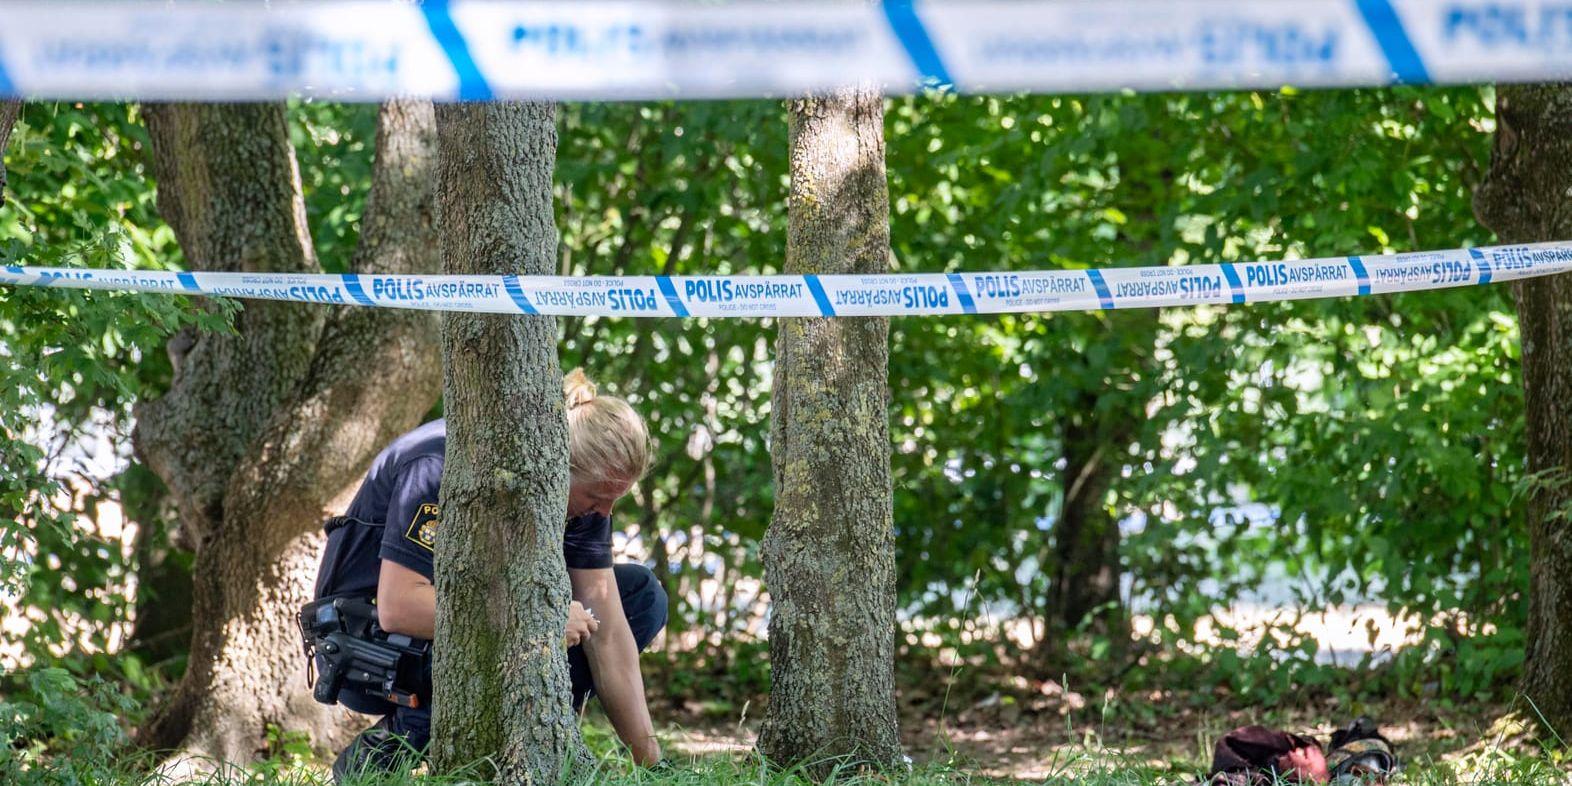 Polis och avspärrningar vid Nydalaparken i Malmö efter en skottlossning i början av juli förra året, som ledde till att en man dog och en blev allvarligt skadad. Arkivbild.